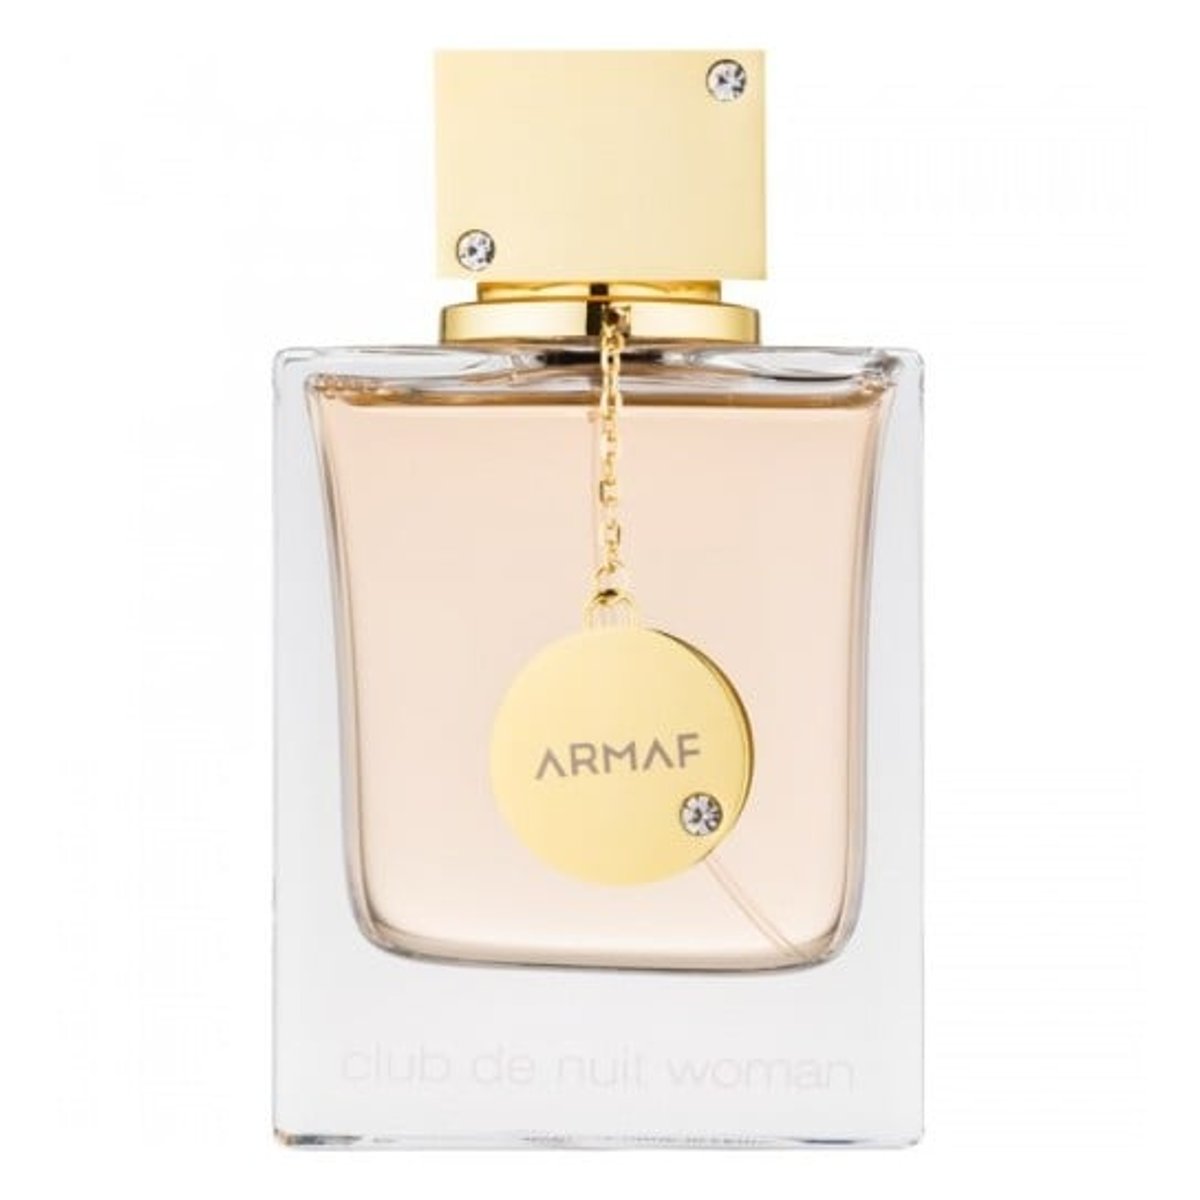 Parfums Club de Nuit de la marque Armaf pour femme 105 ml